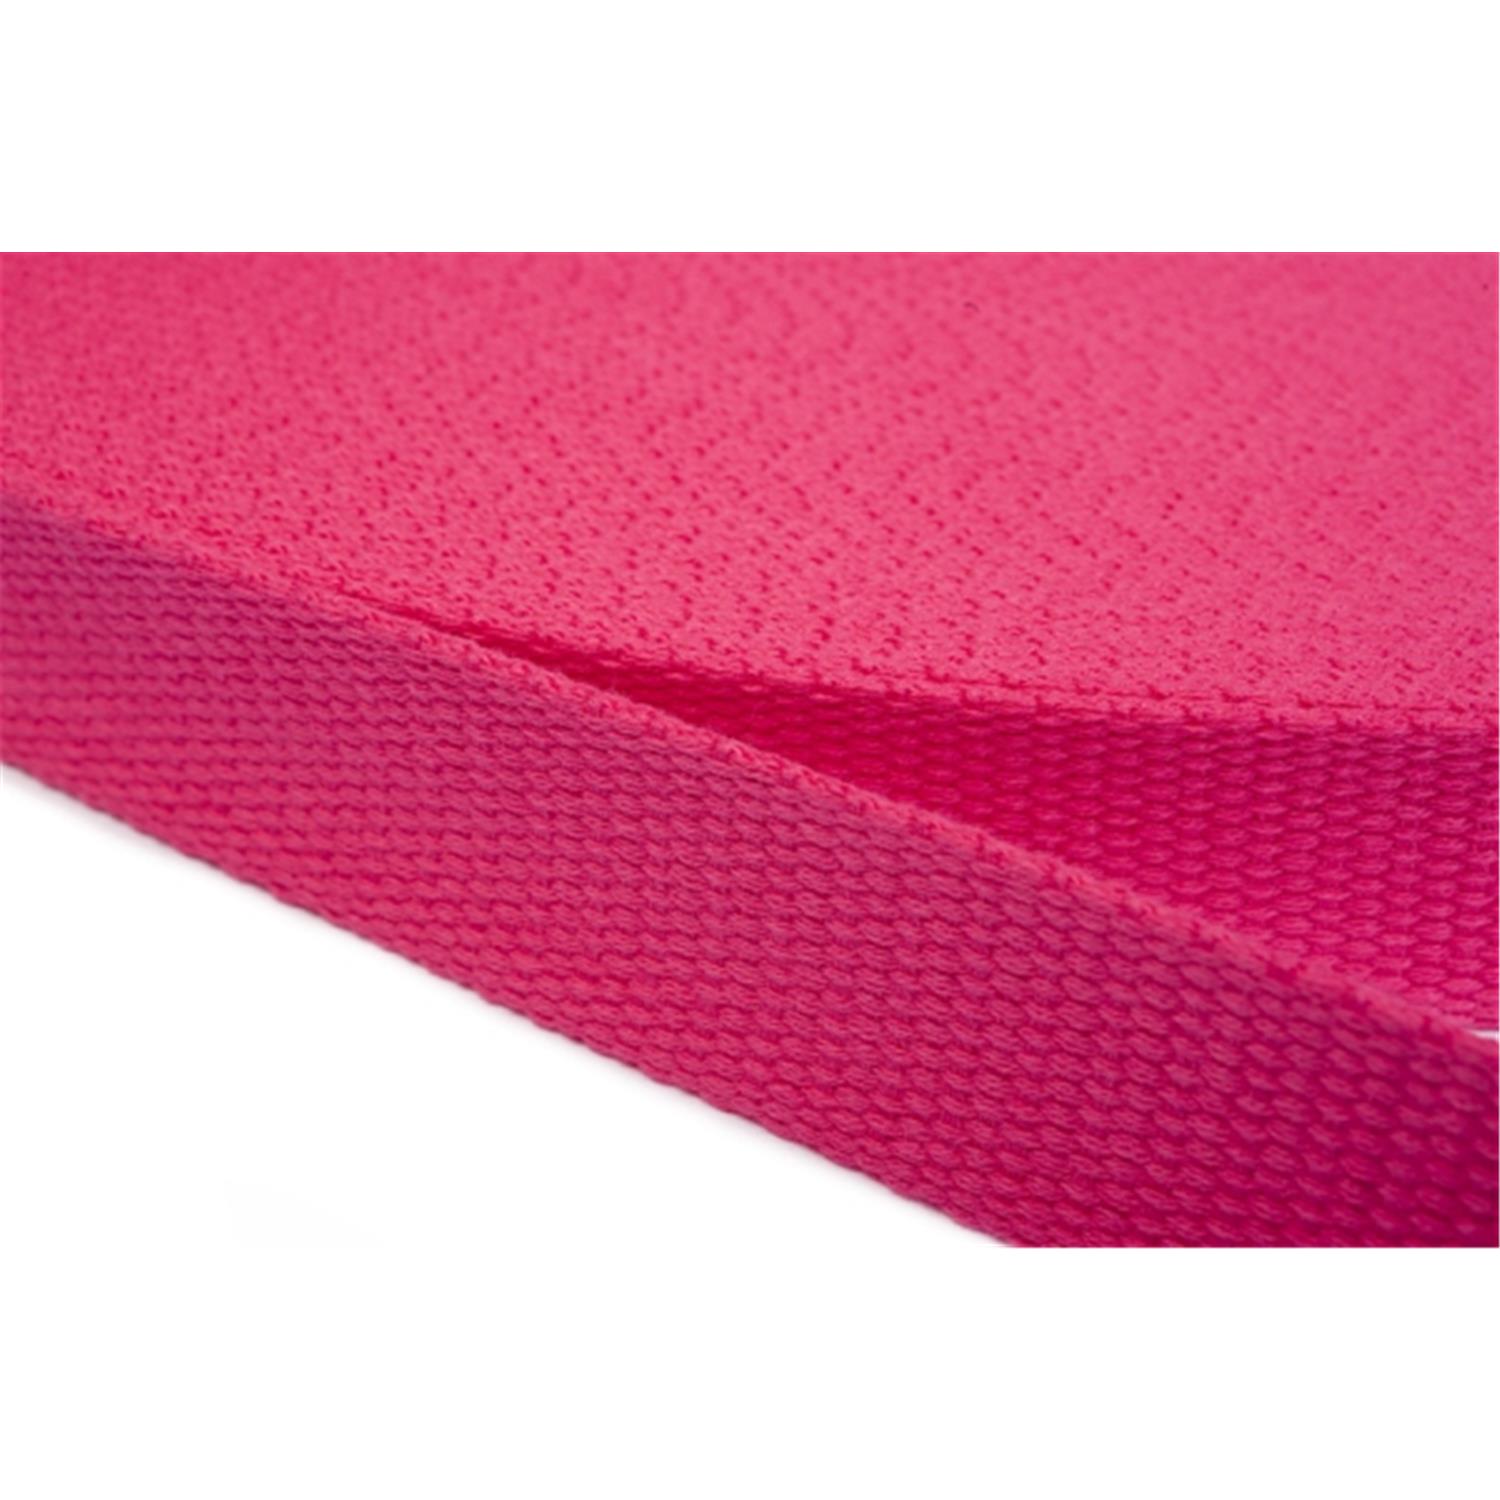 Gurtband aus Baumwolle 15mm in 20 Farben 07 - rosa/pink 6 Meter